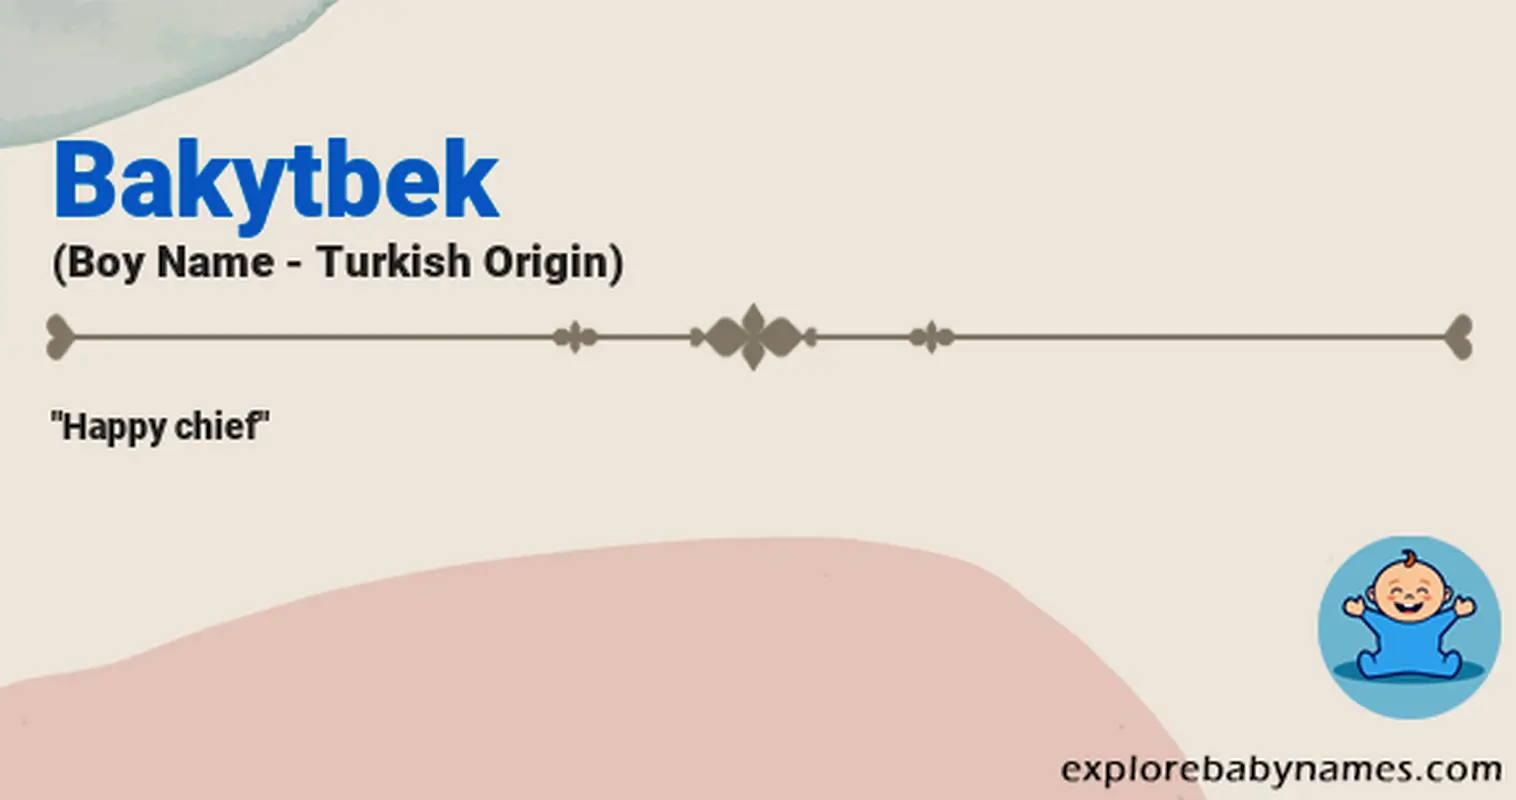 Meaning of Bakytbek